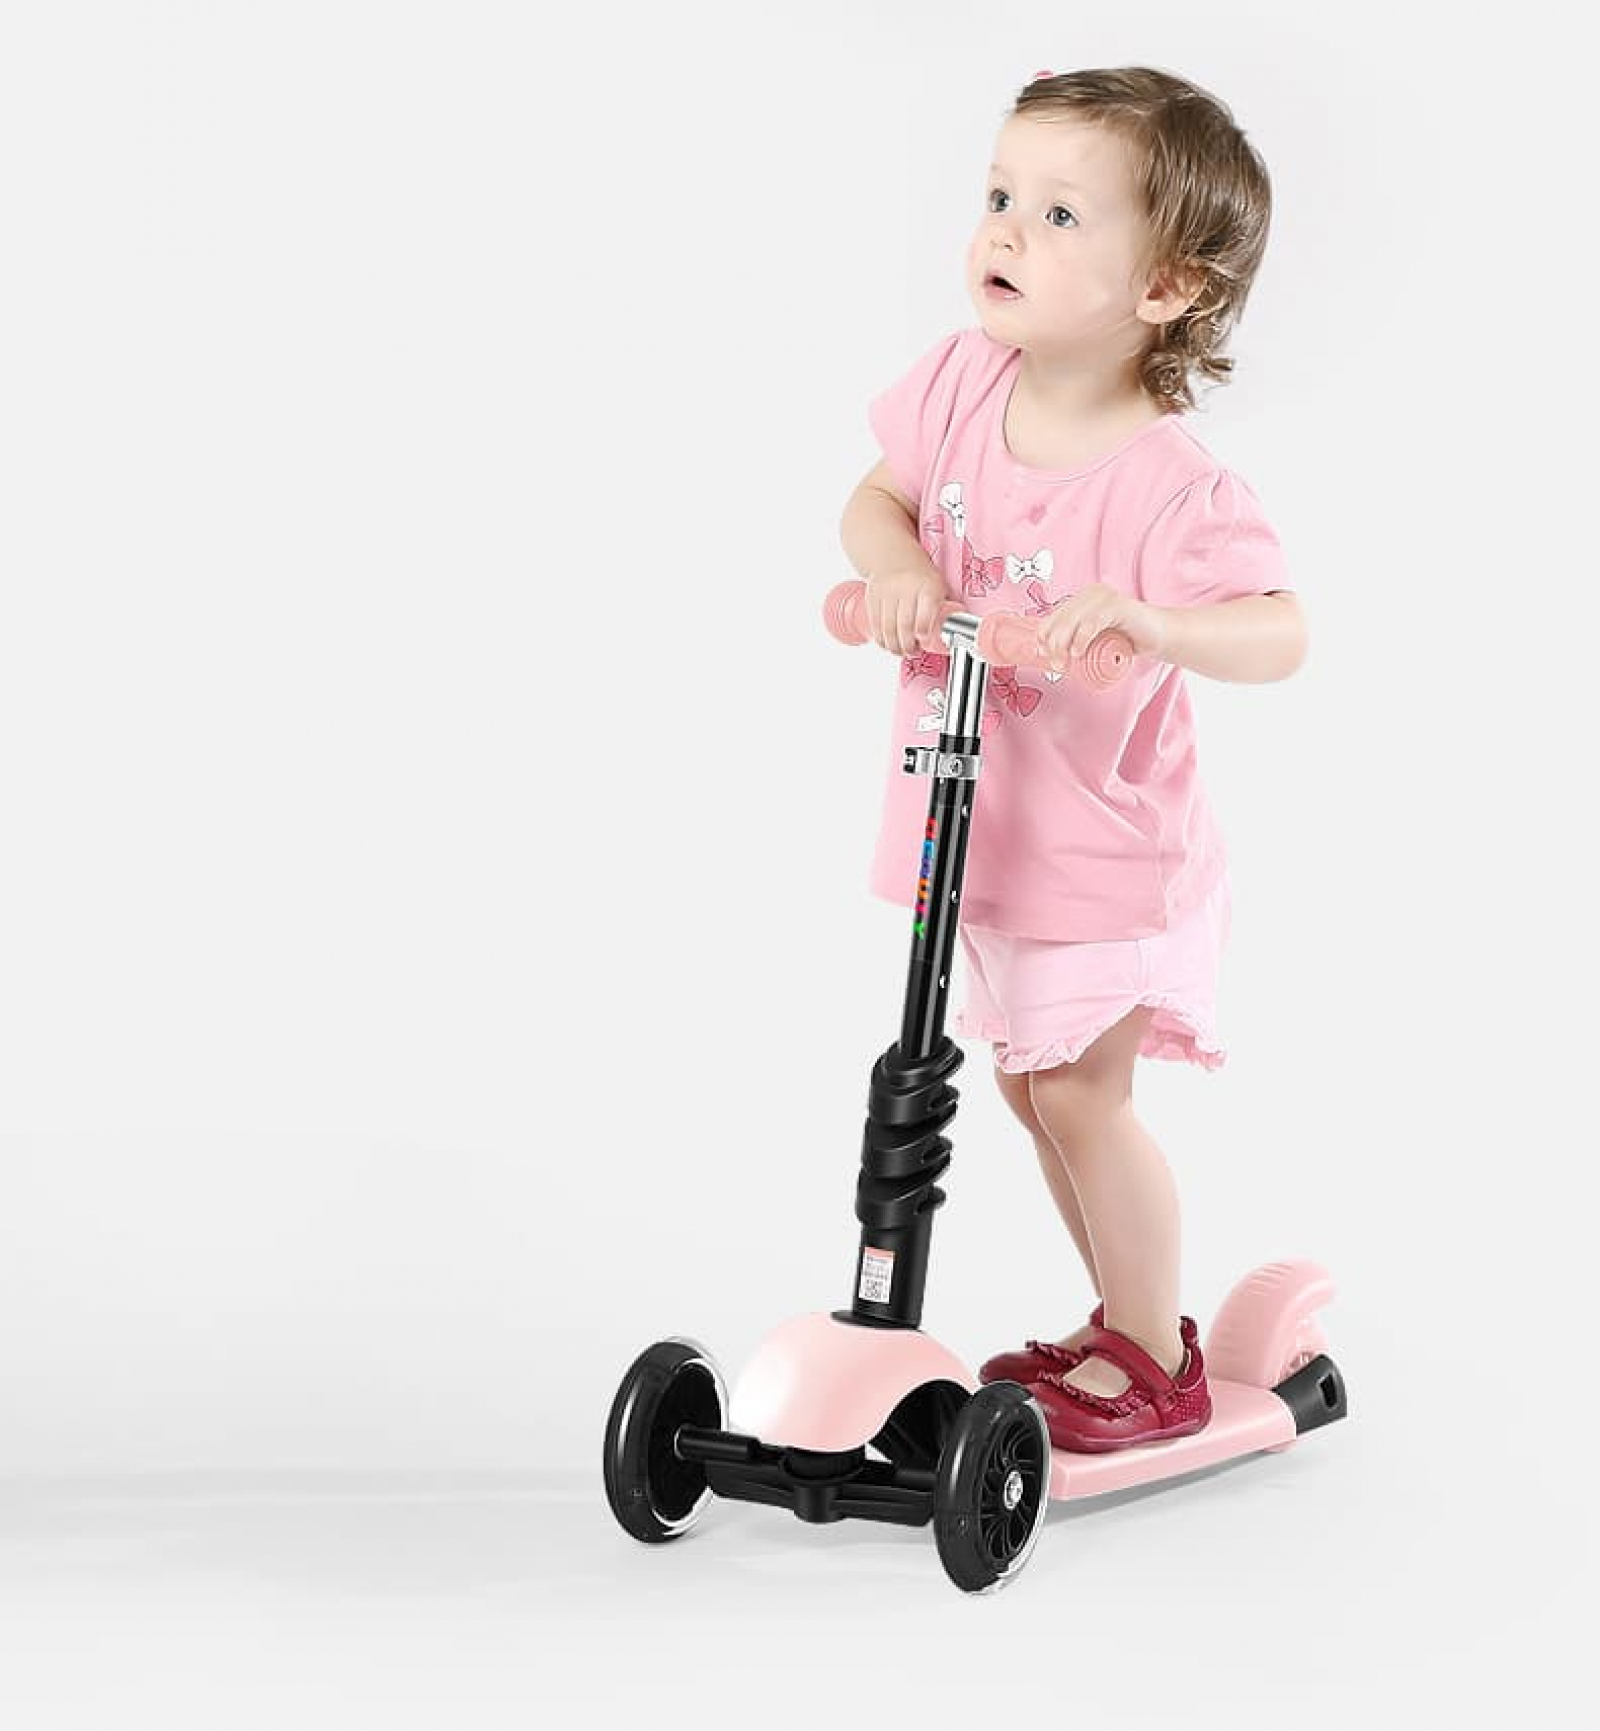 Hé lộ về cách chọn mua xe scooter theo giới tính của trẻ